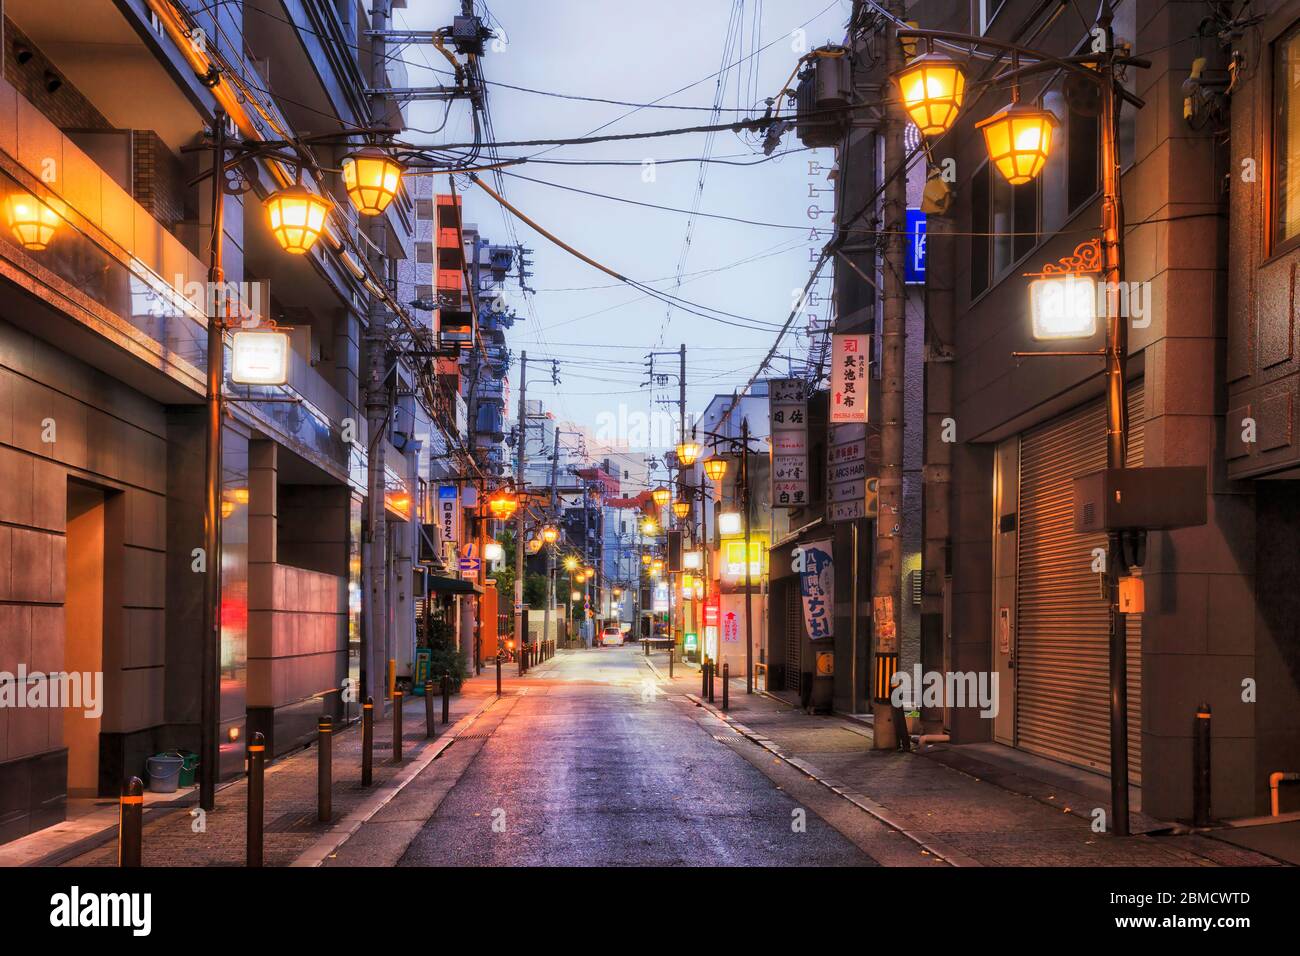 Osaka, Japan - 26 Dez 2019: Ruhige Hintergasse in der Innenstadt von Osaka bei Sonnenaufgang mit Straßenlaternen und verschlossenen Türen lokaler Unternehmen. Stockfoto